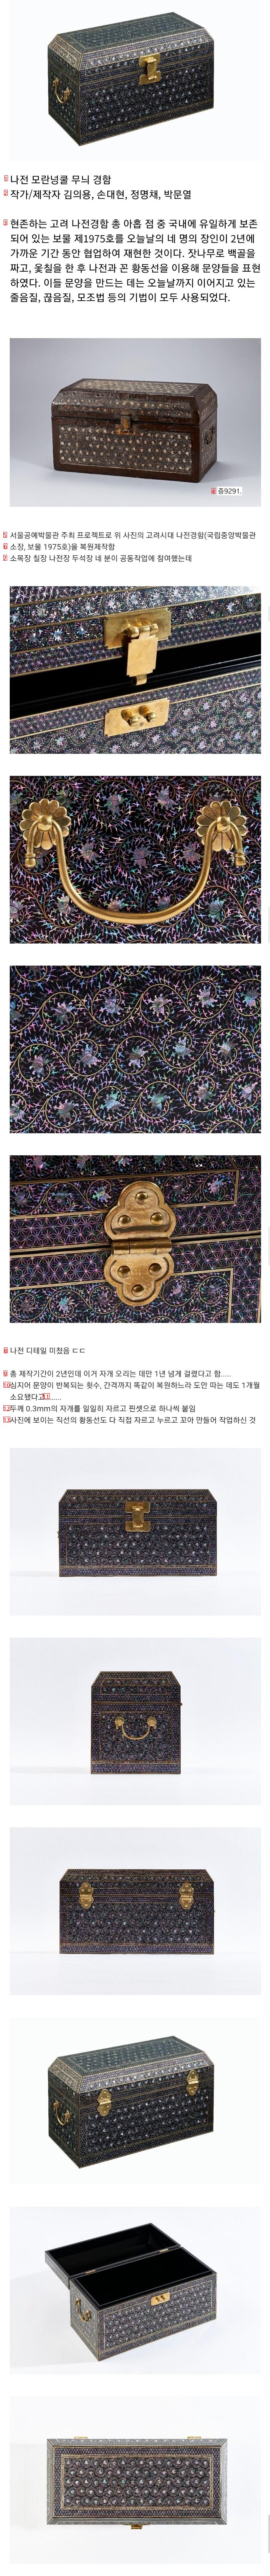 韓国職人4人が2年かけて復元製作した高麗時代の螺鈿鏡箱完成品クオリティ